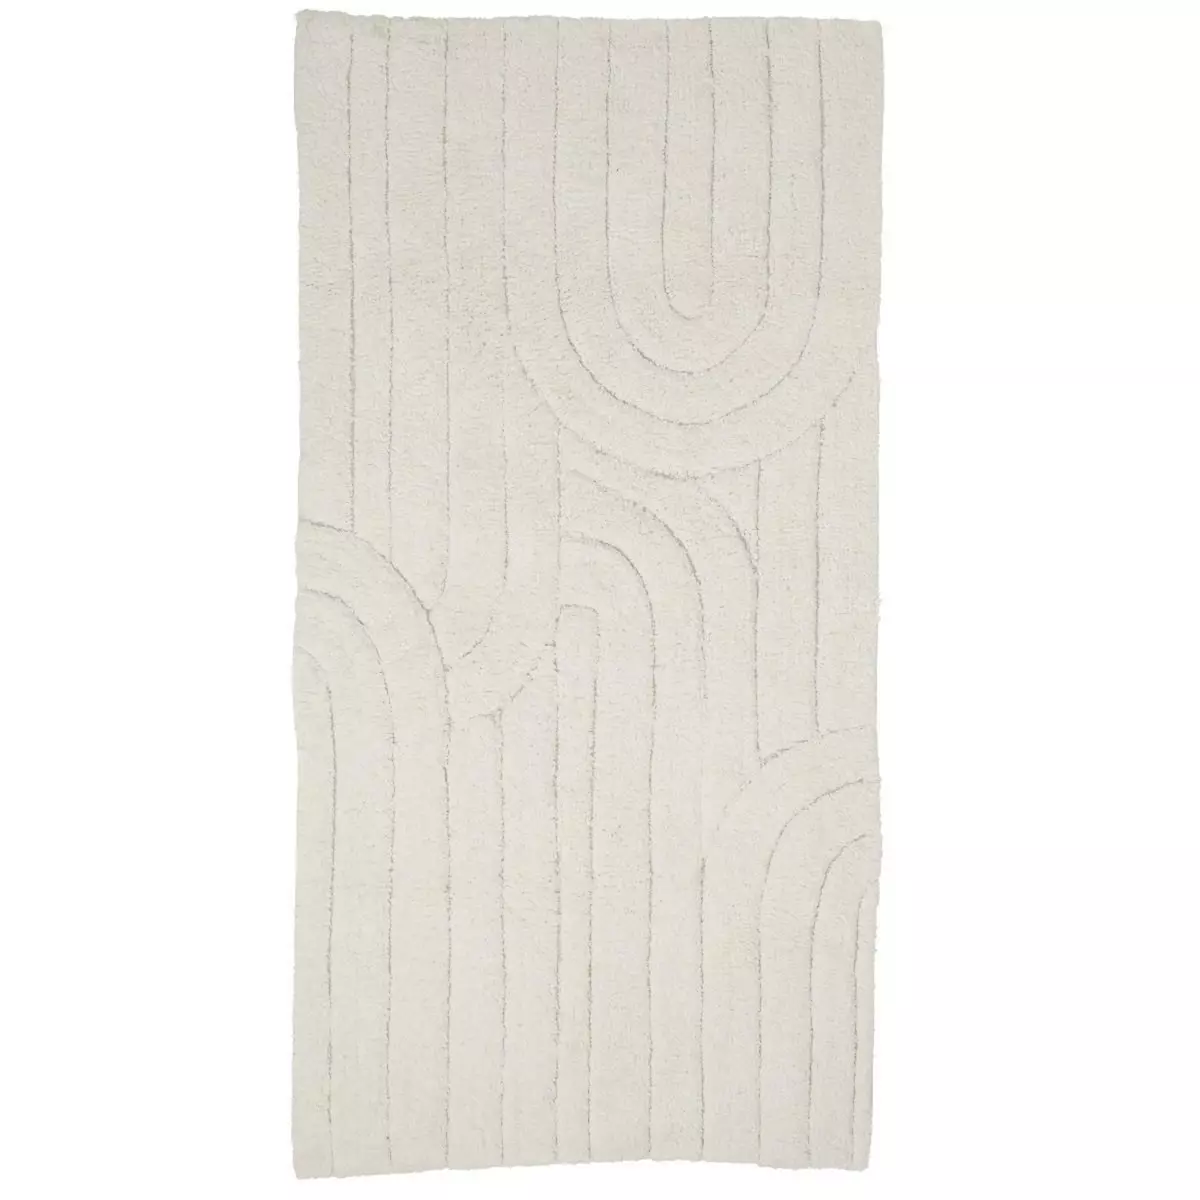 GUY LEVASSEUR Tapis en coton uni ivoire motif arc 60x120cm